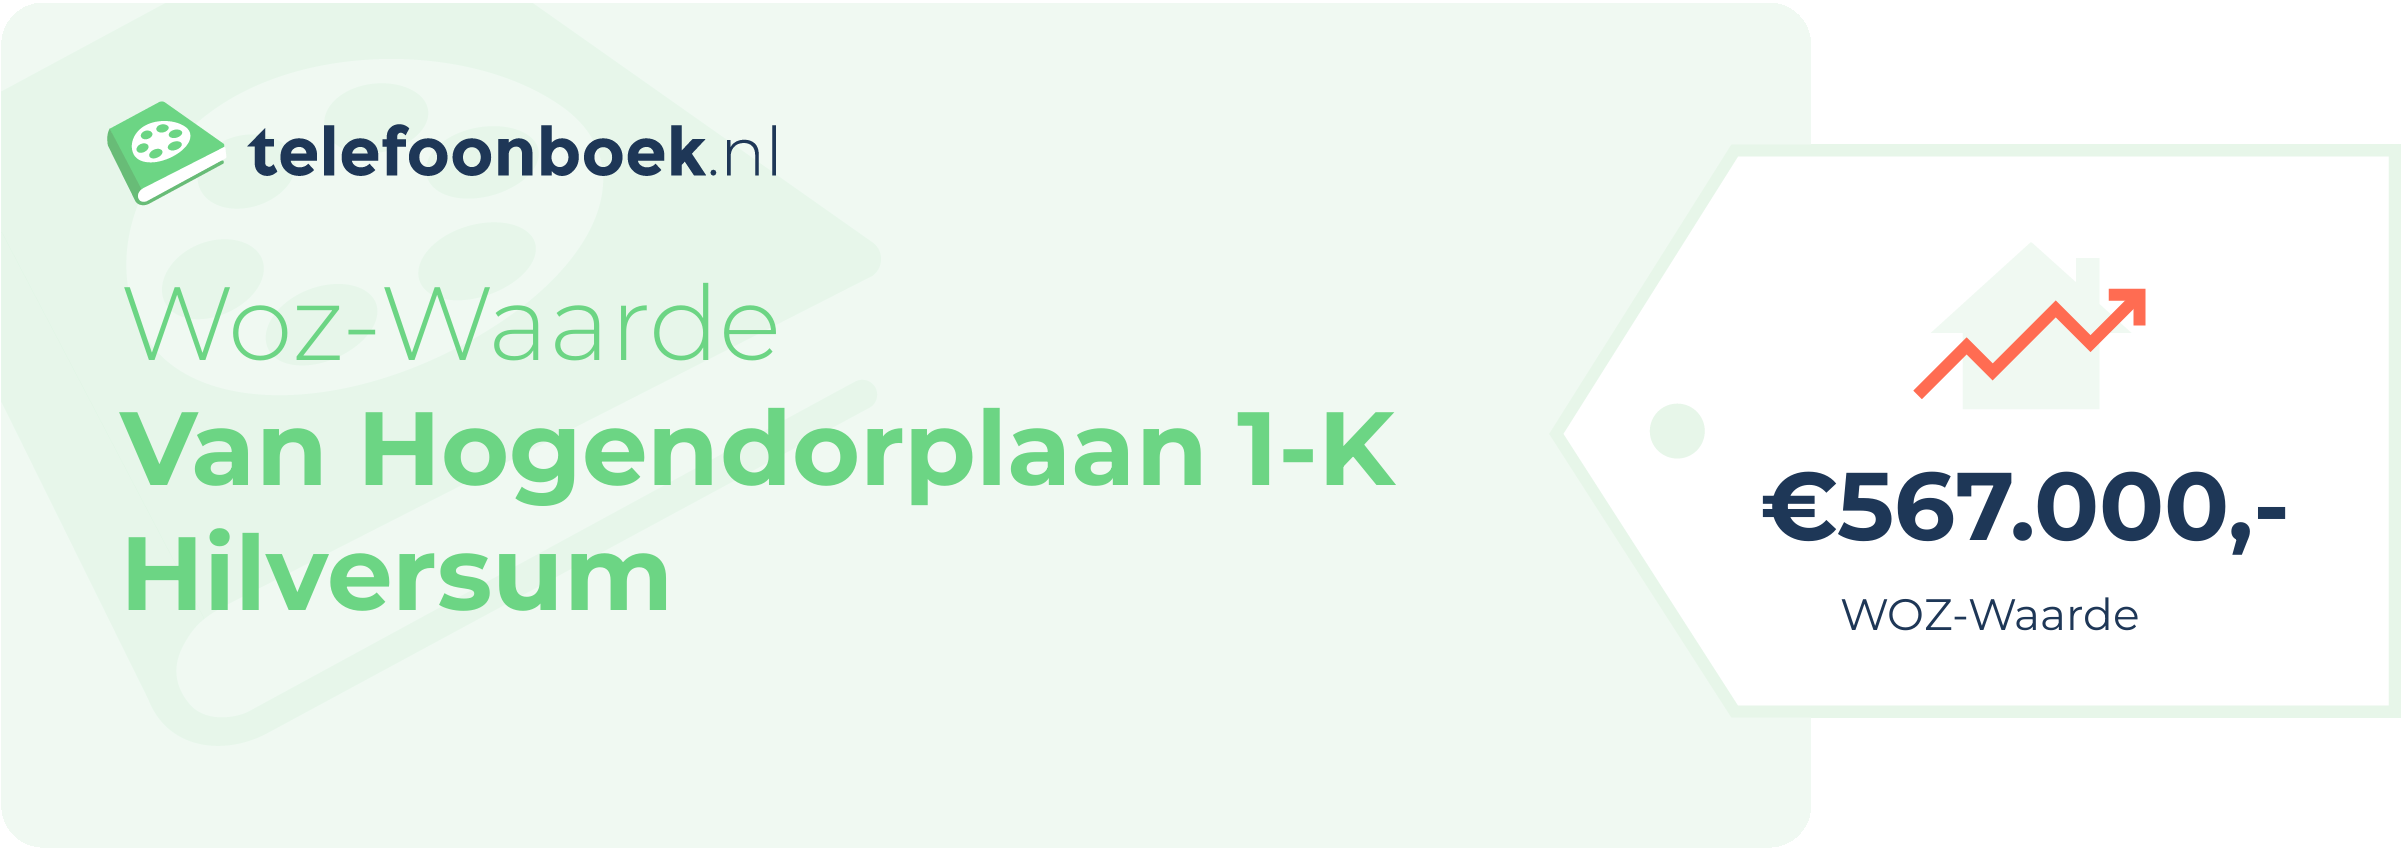 WOZ-waarde Van Hogendorplaan 1-K Hilversum